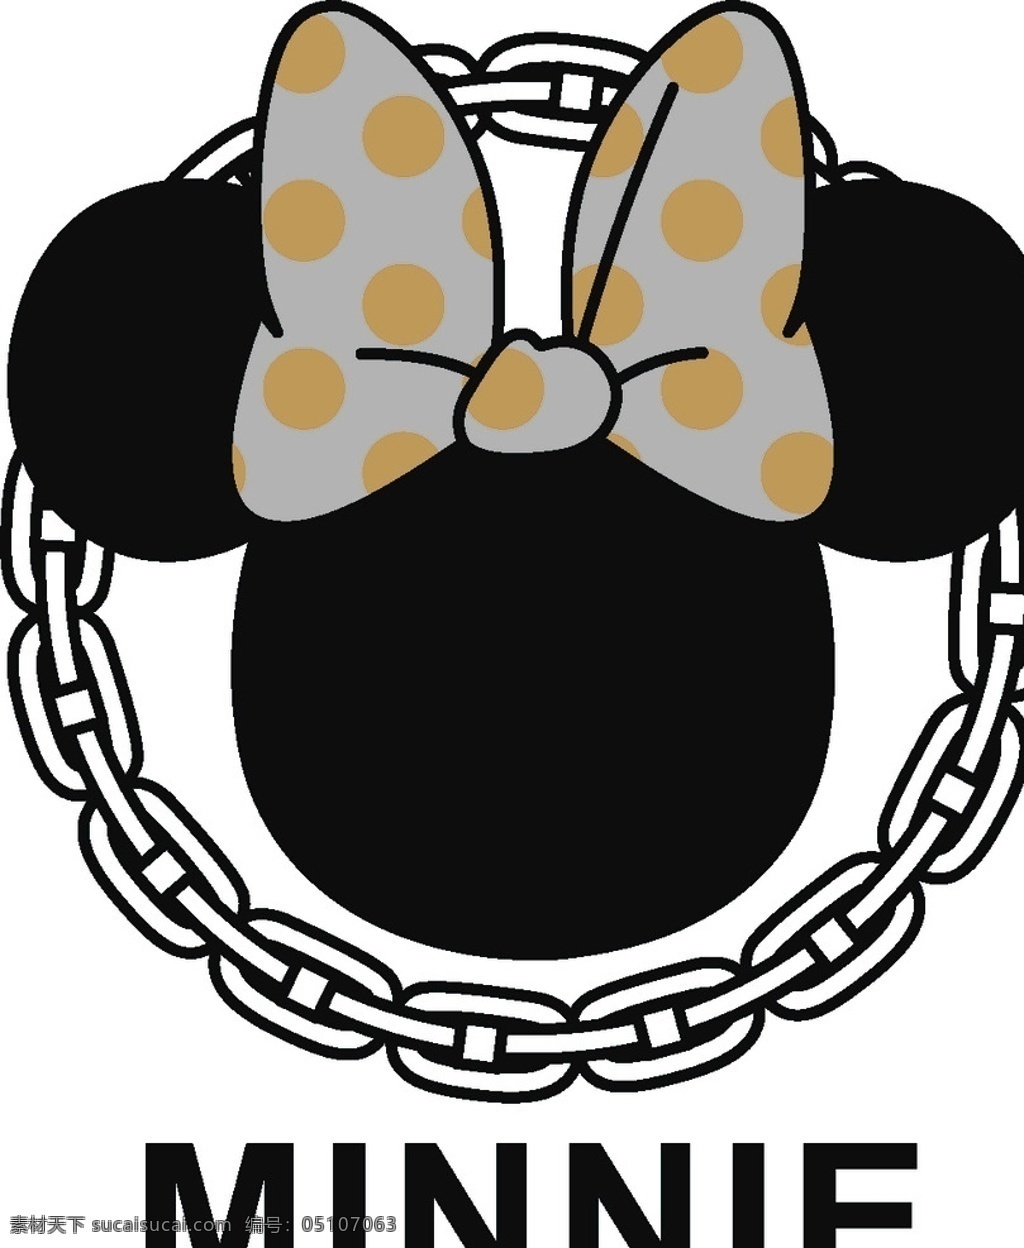 链子米奇头 坐着的米奇 字母 mickey 迪士尼 动画 卡通 米老鼠 米奇 高飞 mouse 伸手米奇 服装设计